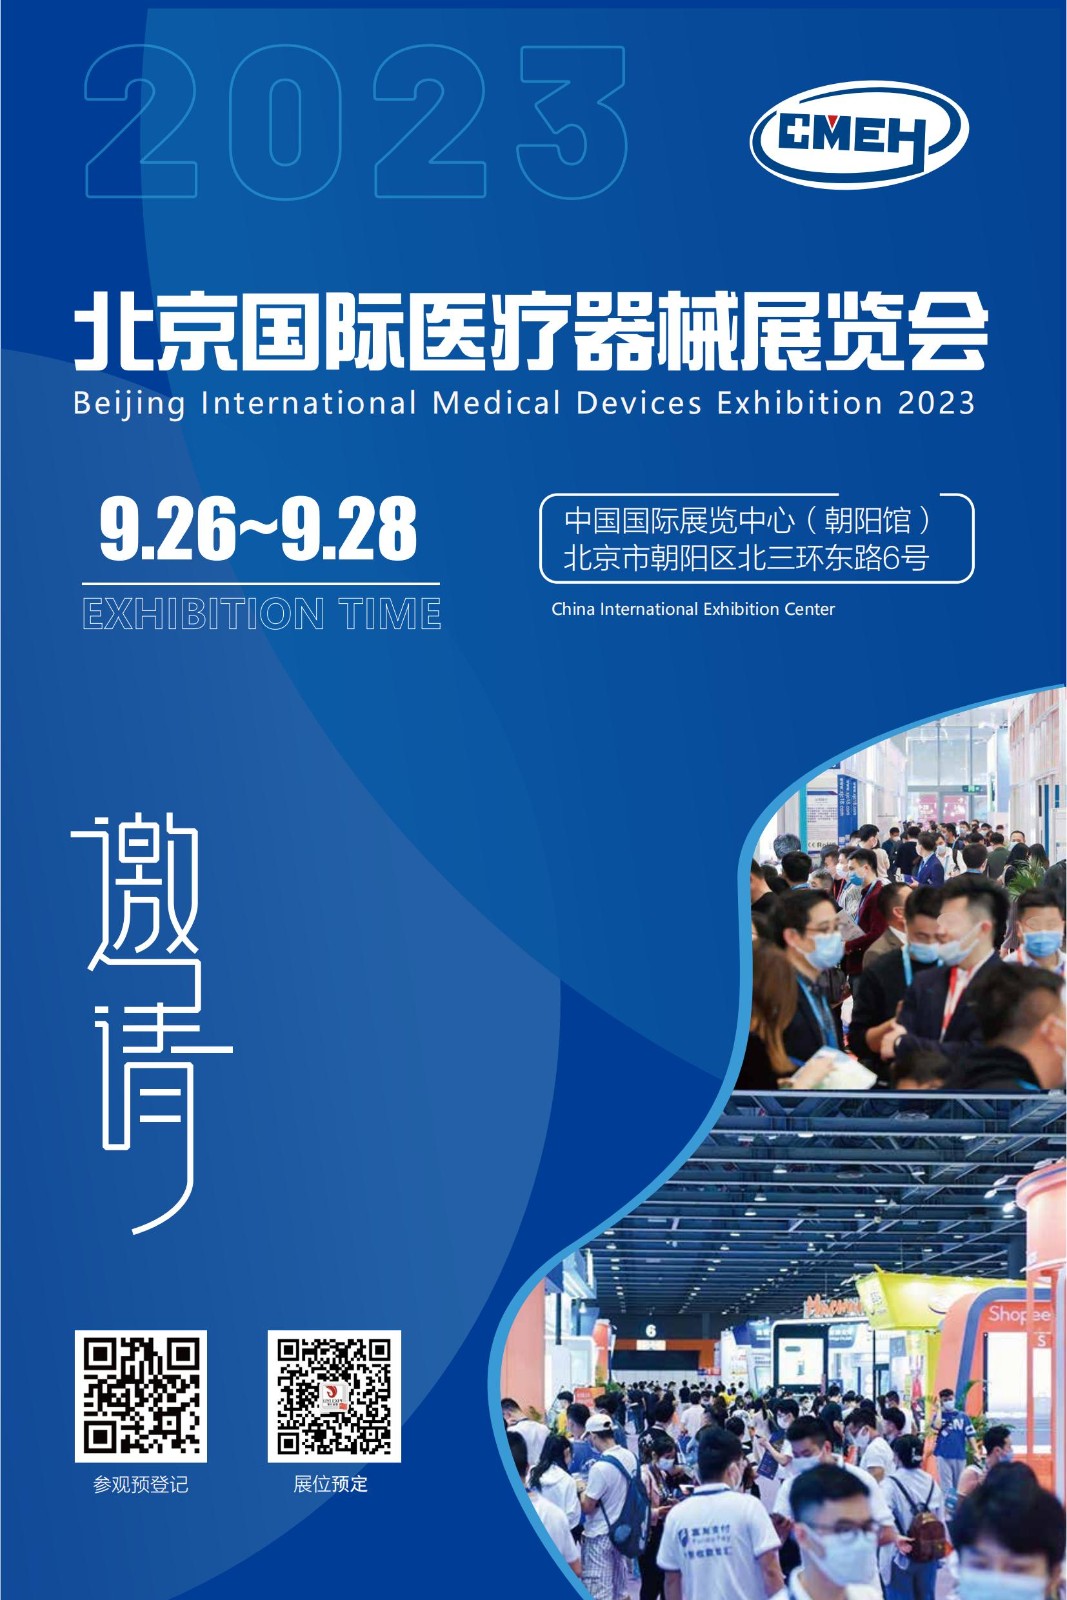 北京国际医疗器械展览会将于9月4日在中国国际展览中心隆重举行